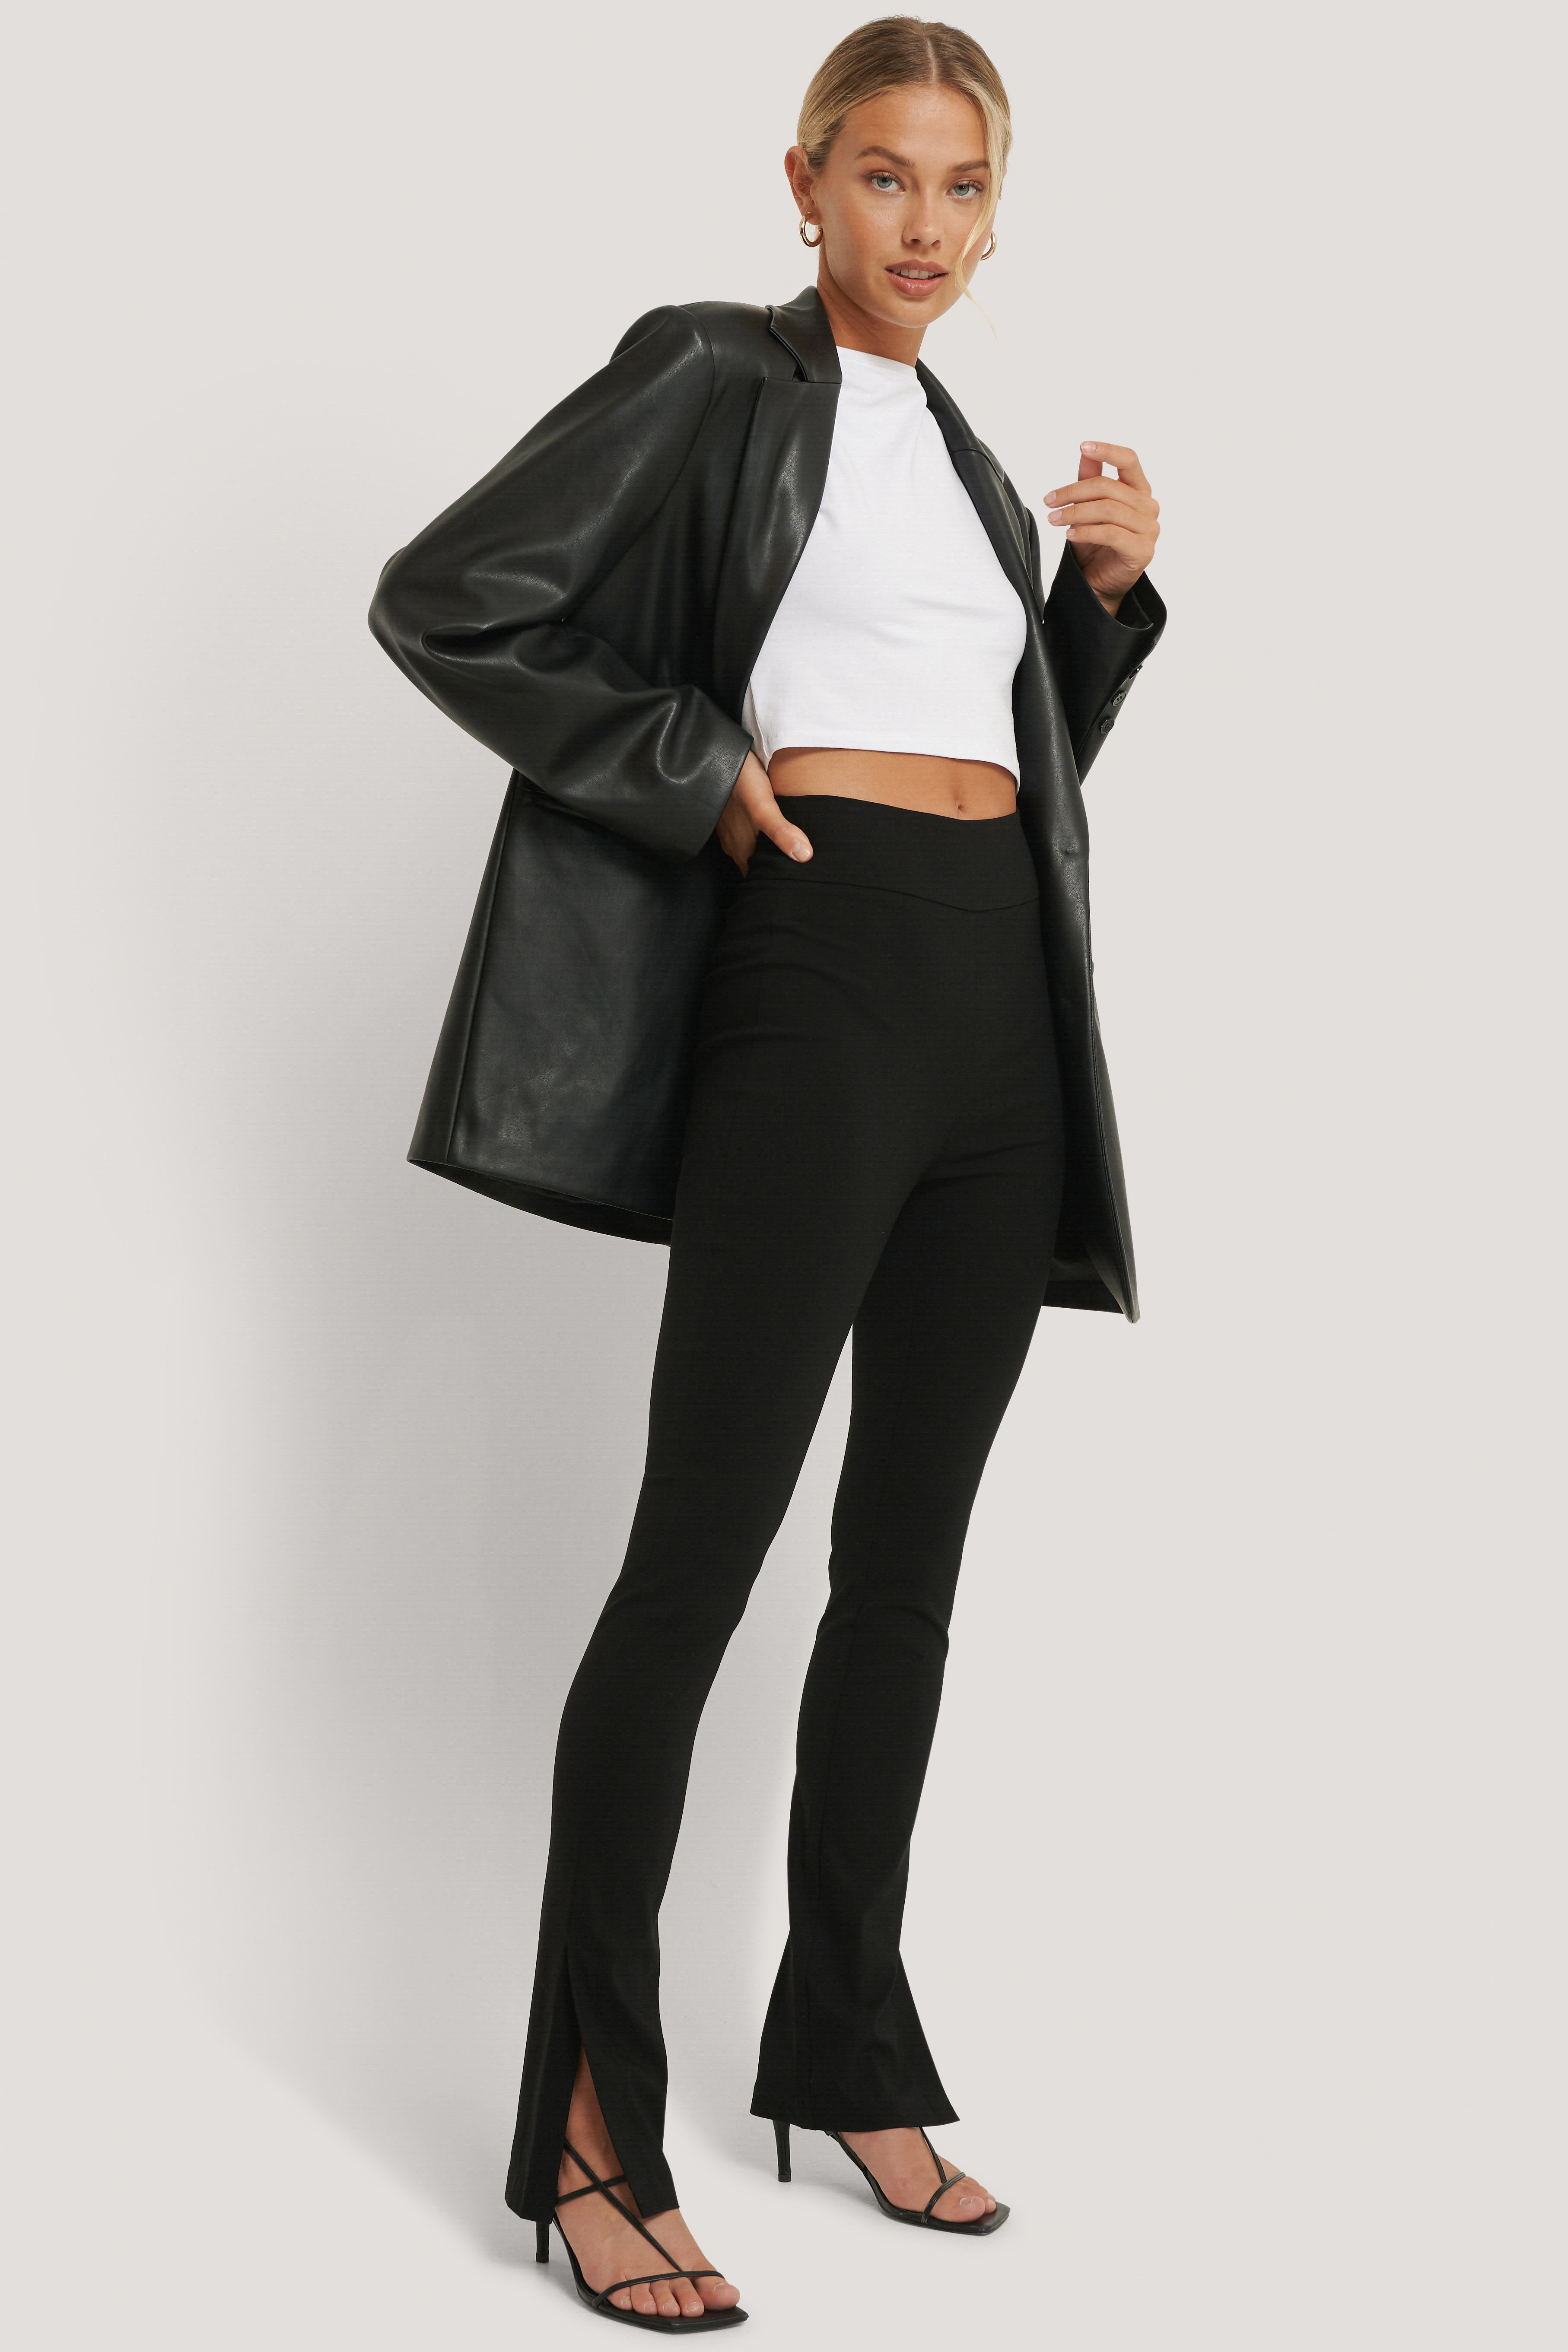 Men's Leather Tactical Vest With Leather Pants Black [Slim-Cut] –  LeatherKloset